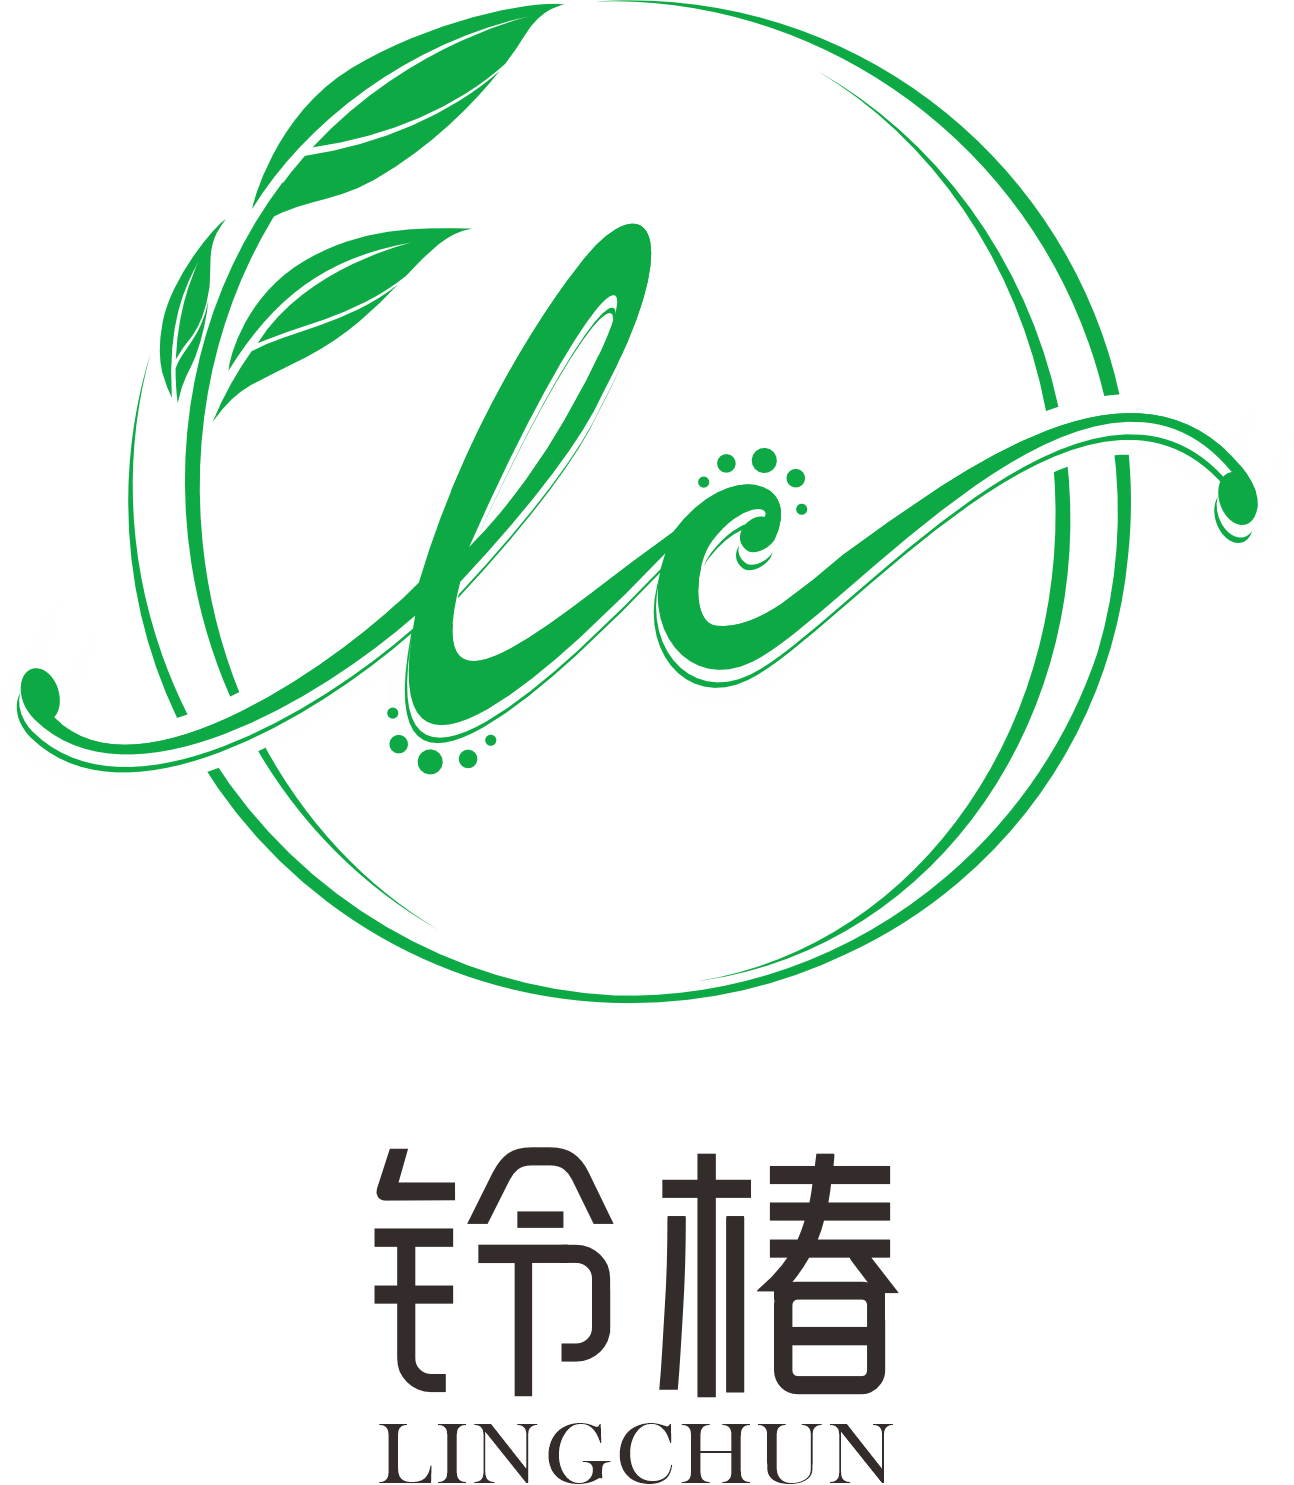 扶正堂公司启用新商标：铃椿 - 香港扶正堂国际美业集团